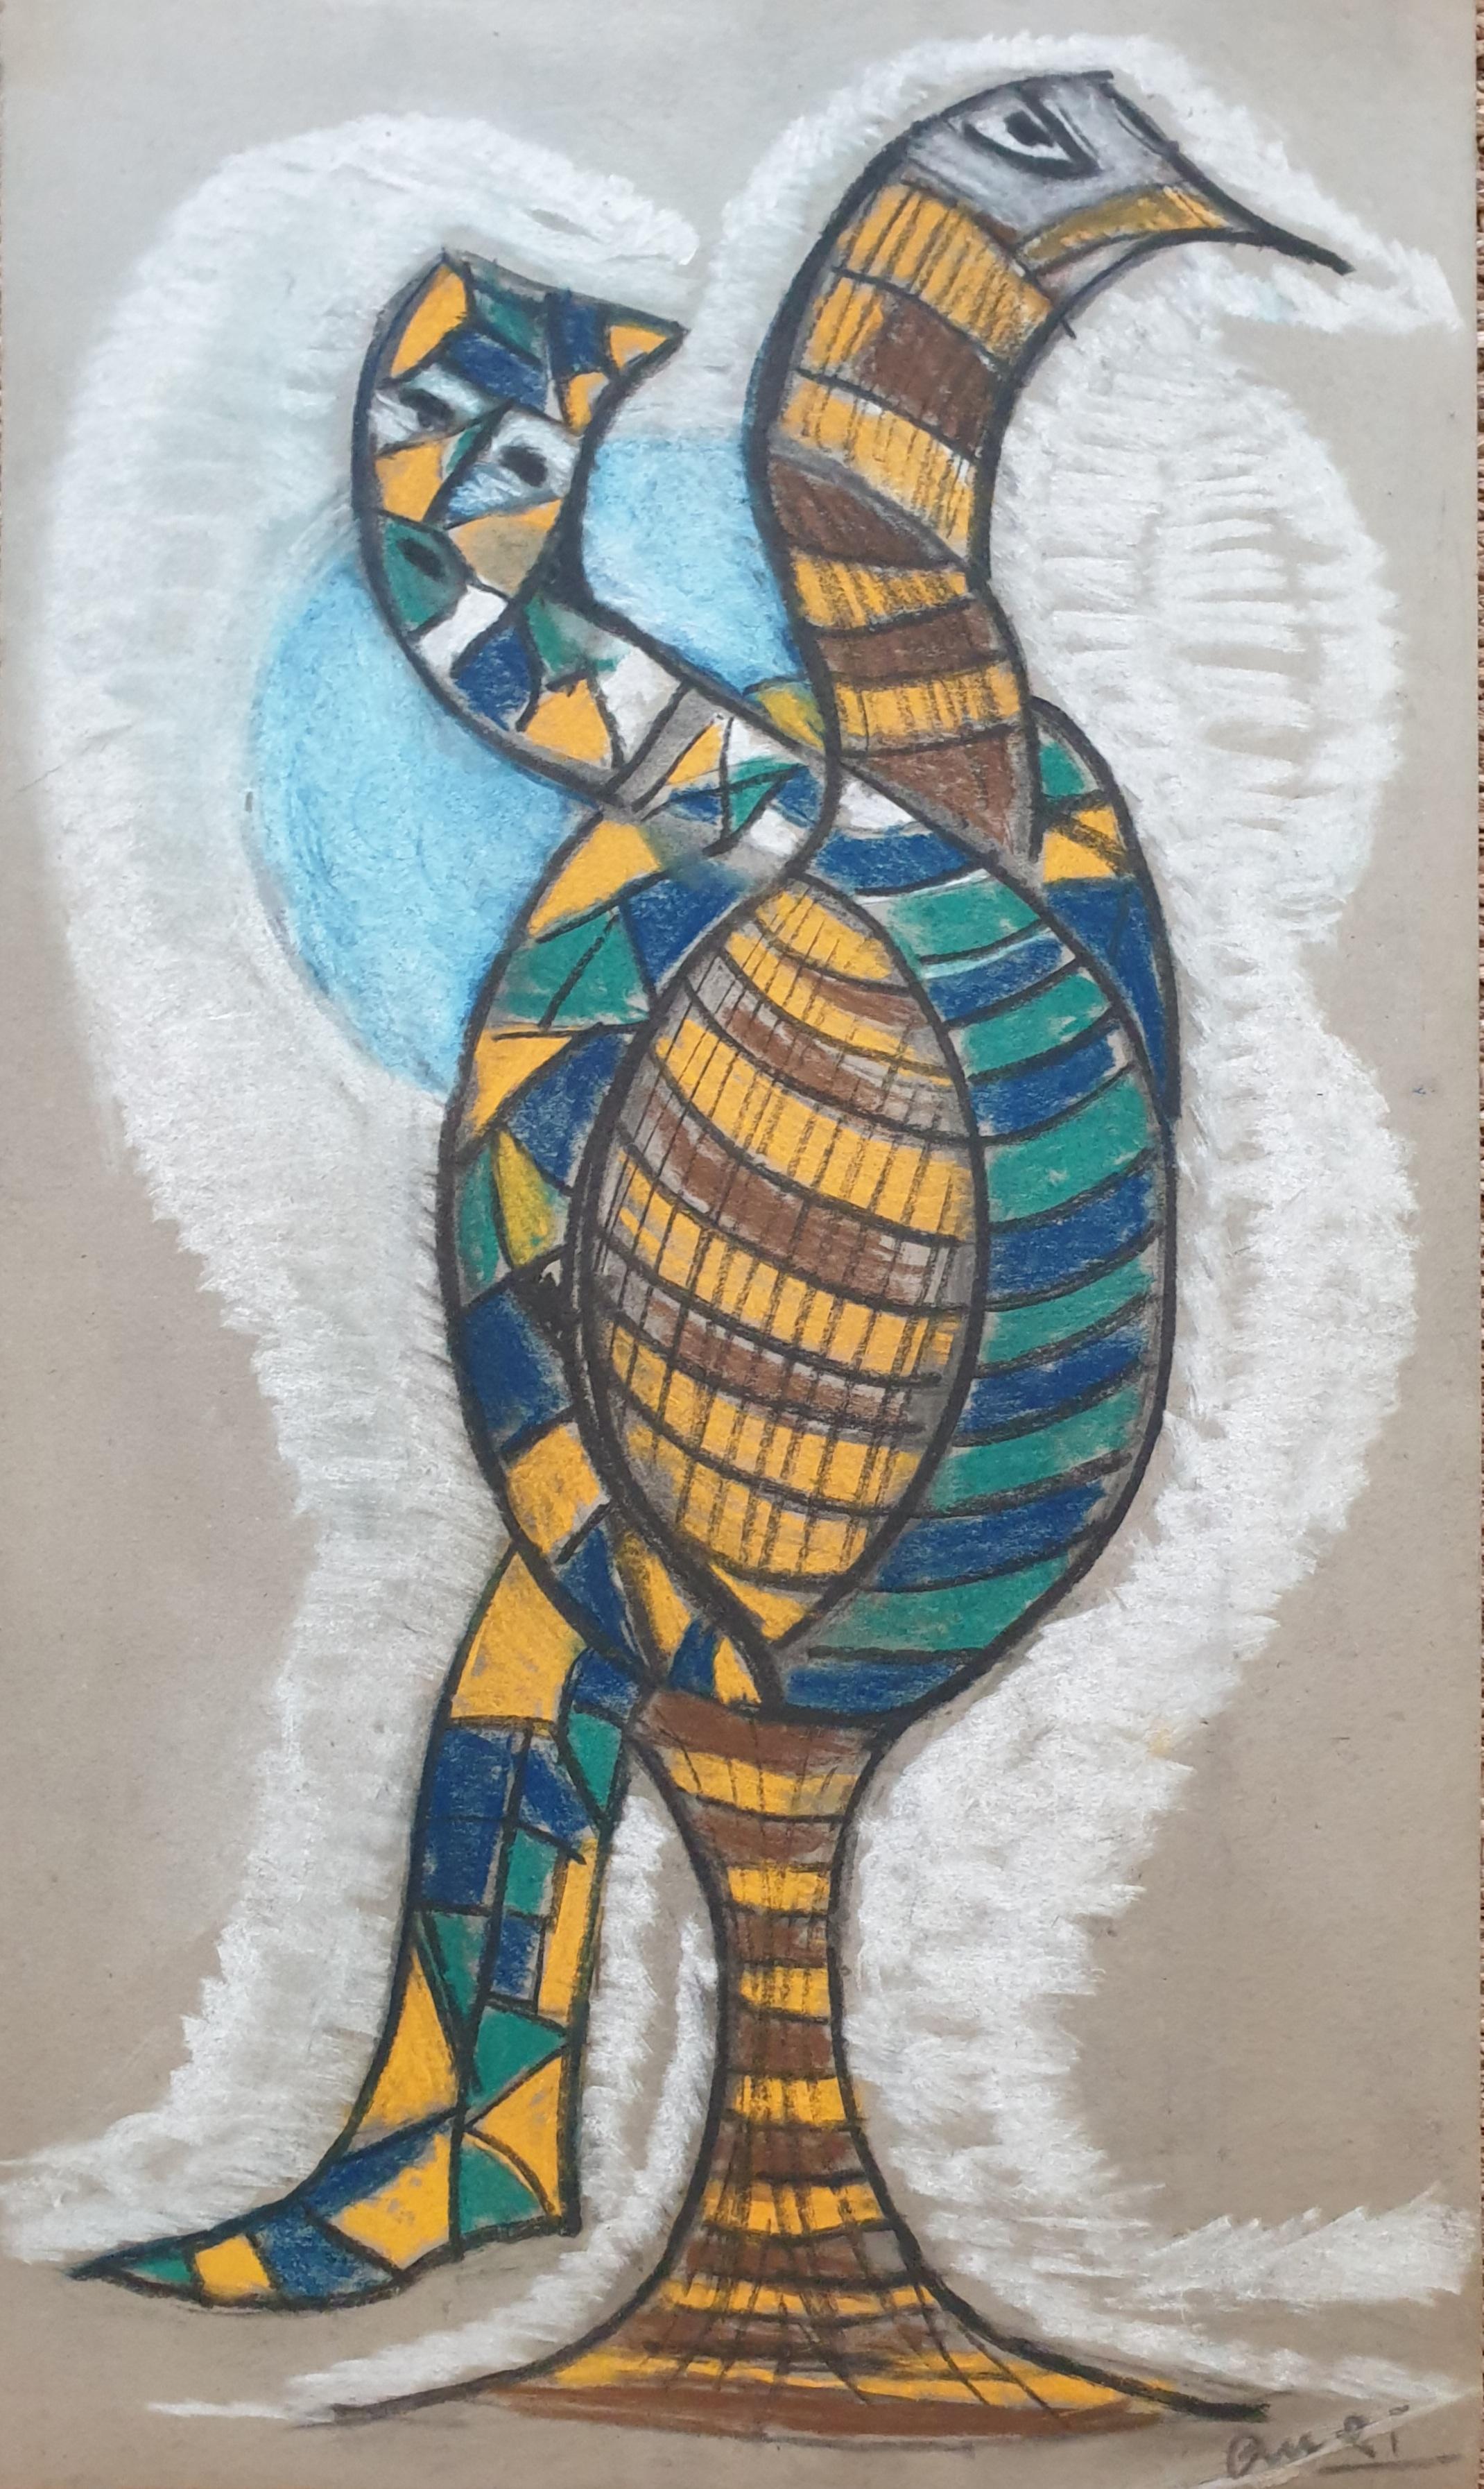 Oiseau anthropomorphe expressionniste abstrait de style CoBrA. Chalk sur papier.